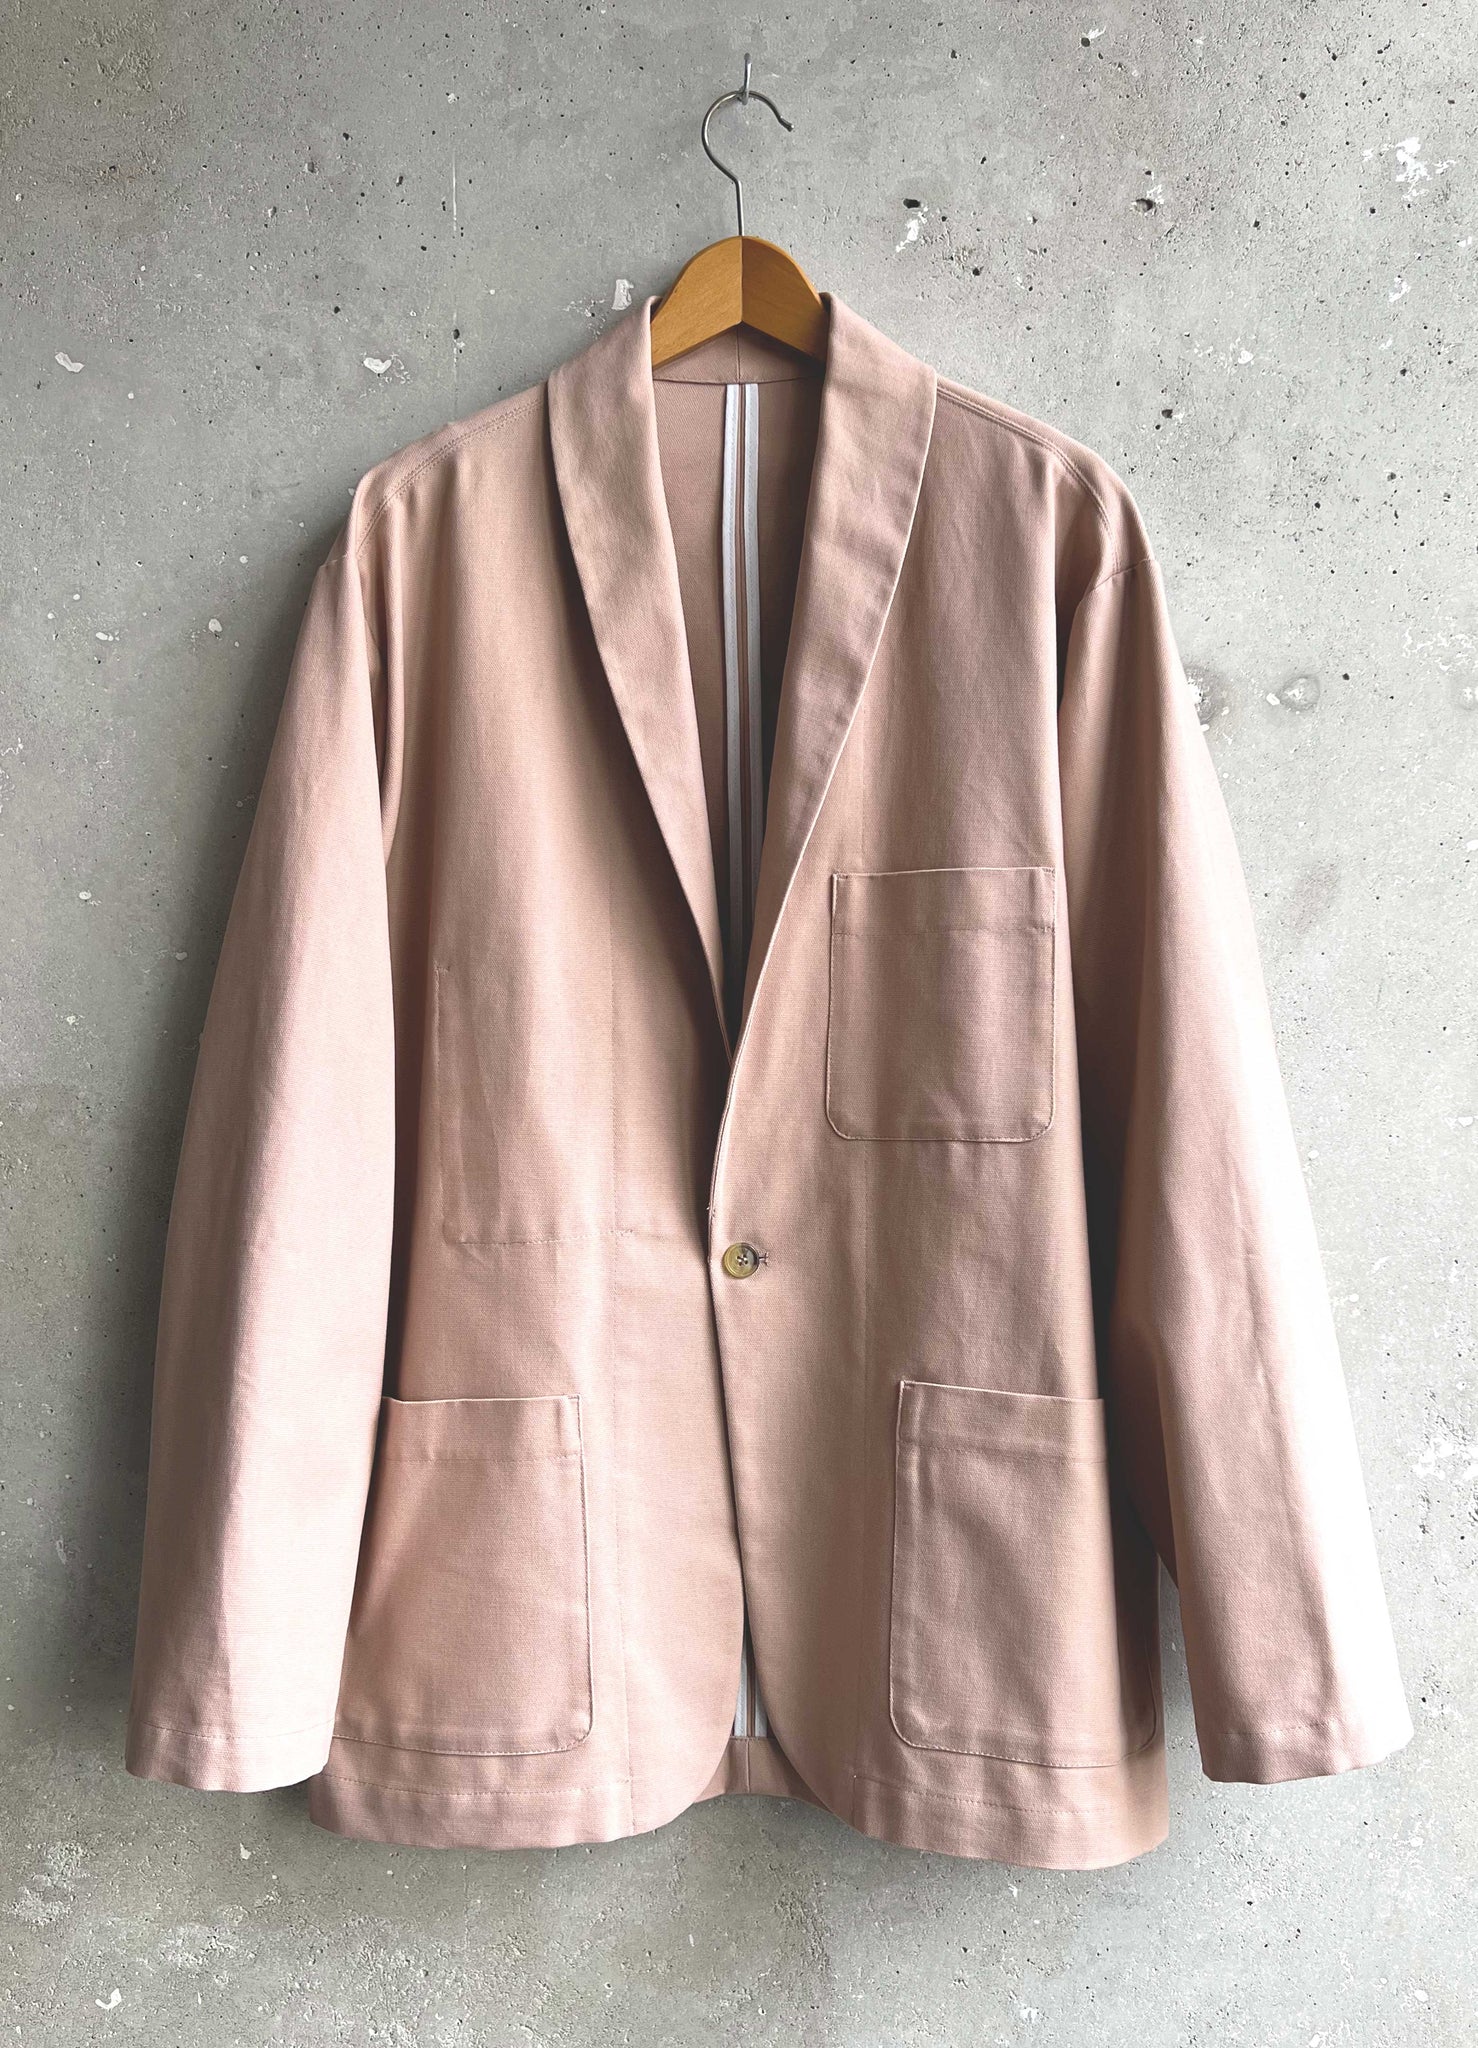 Soft Suit jacket pink canvas